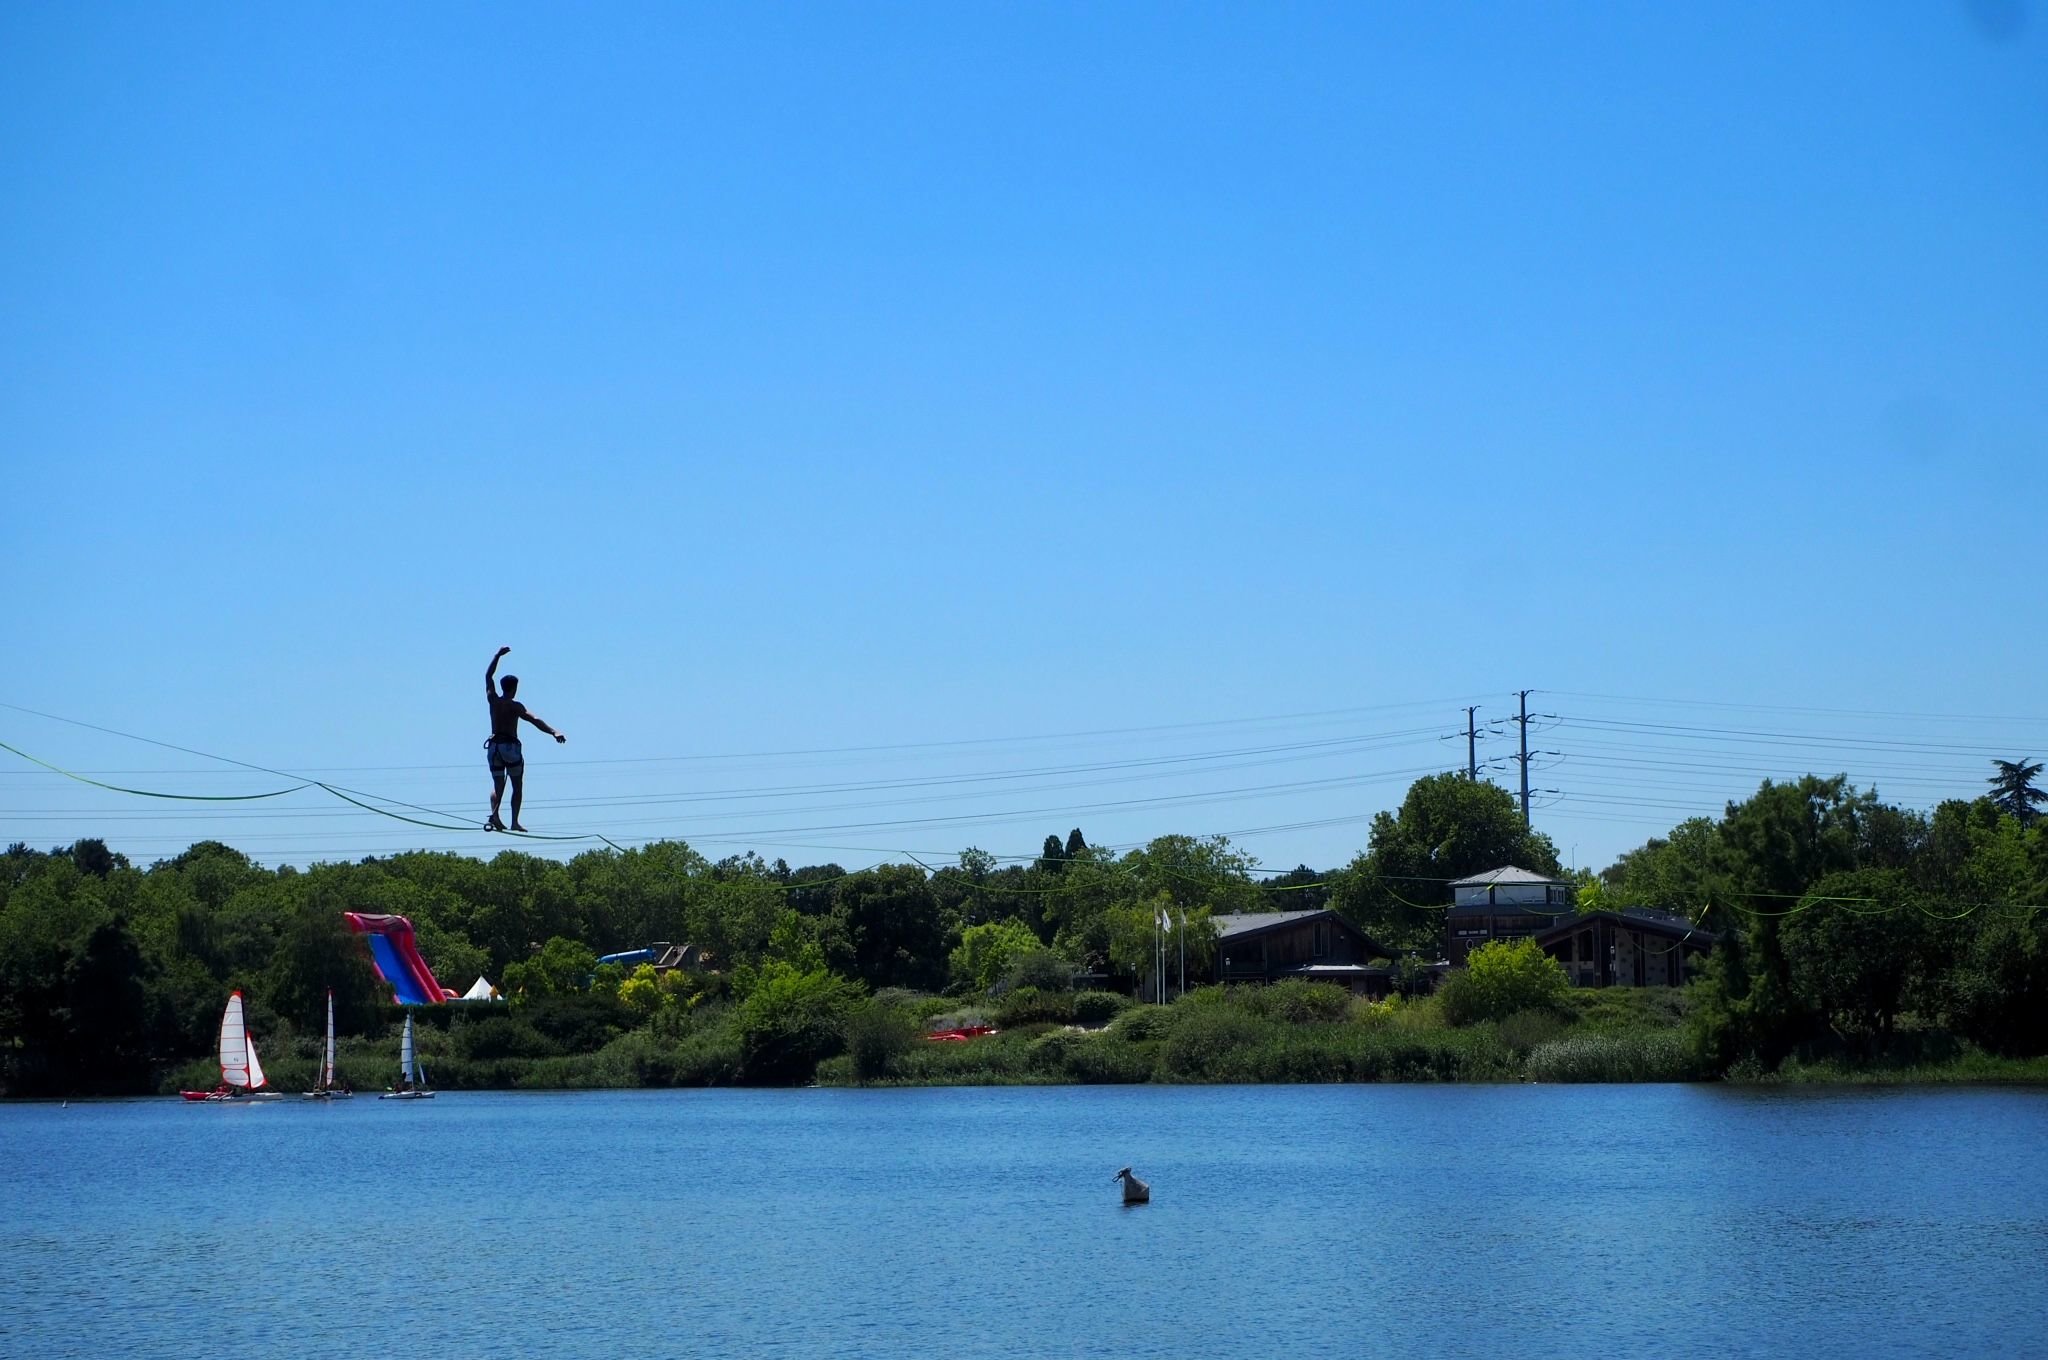 Créteil (Val-de-Marne), vendredi 15 juillet. Philippe Soubies, sportif professionnel et membre de l'association Parislack, a traversé le lac sur une sangle longue de 250 mètres, à 10 mètres au-dessus de l'eau. LP/C.T.